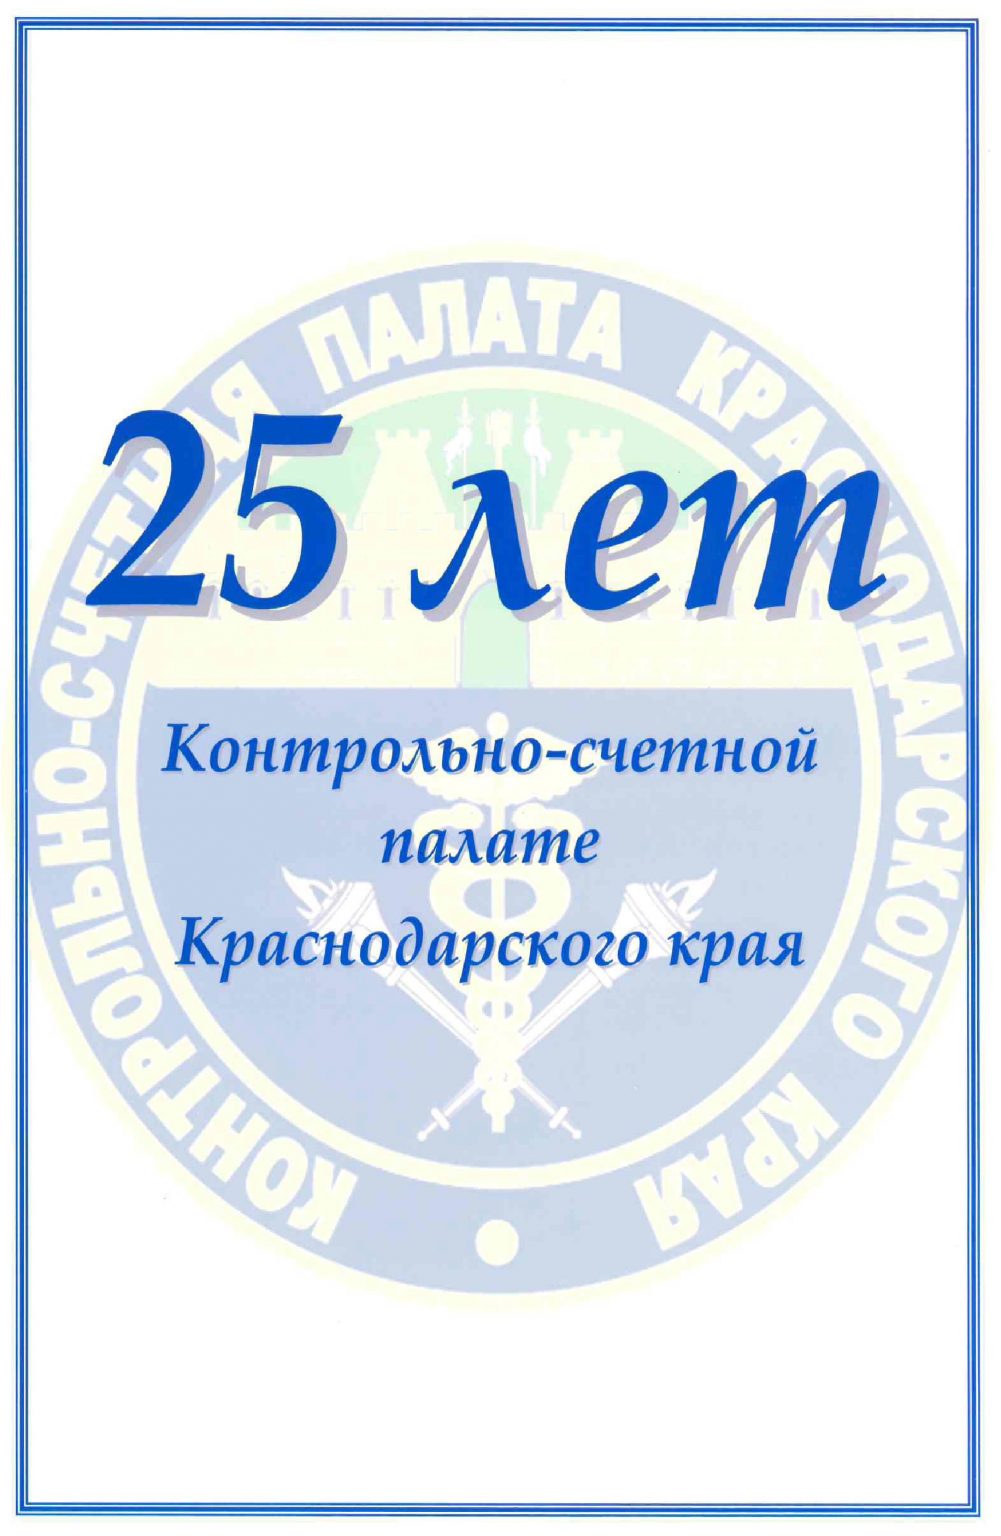 Председатель парламента Кубани Юрий Бурлачко поздравил региональную Контрольно-счётную палату с 25-летием